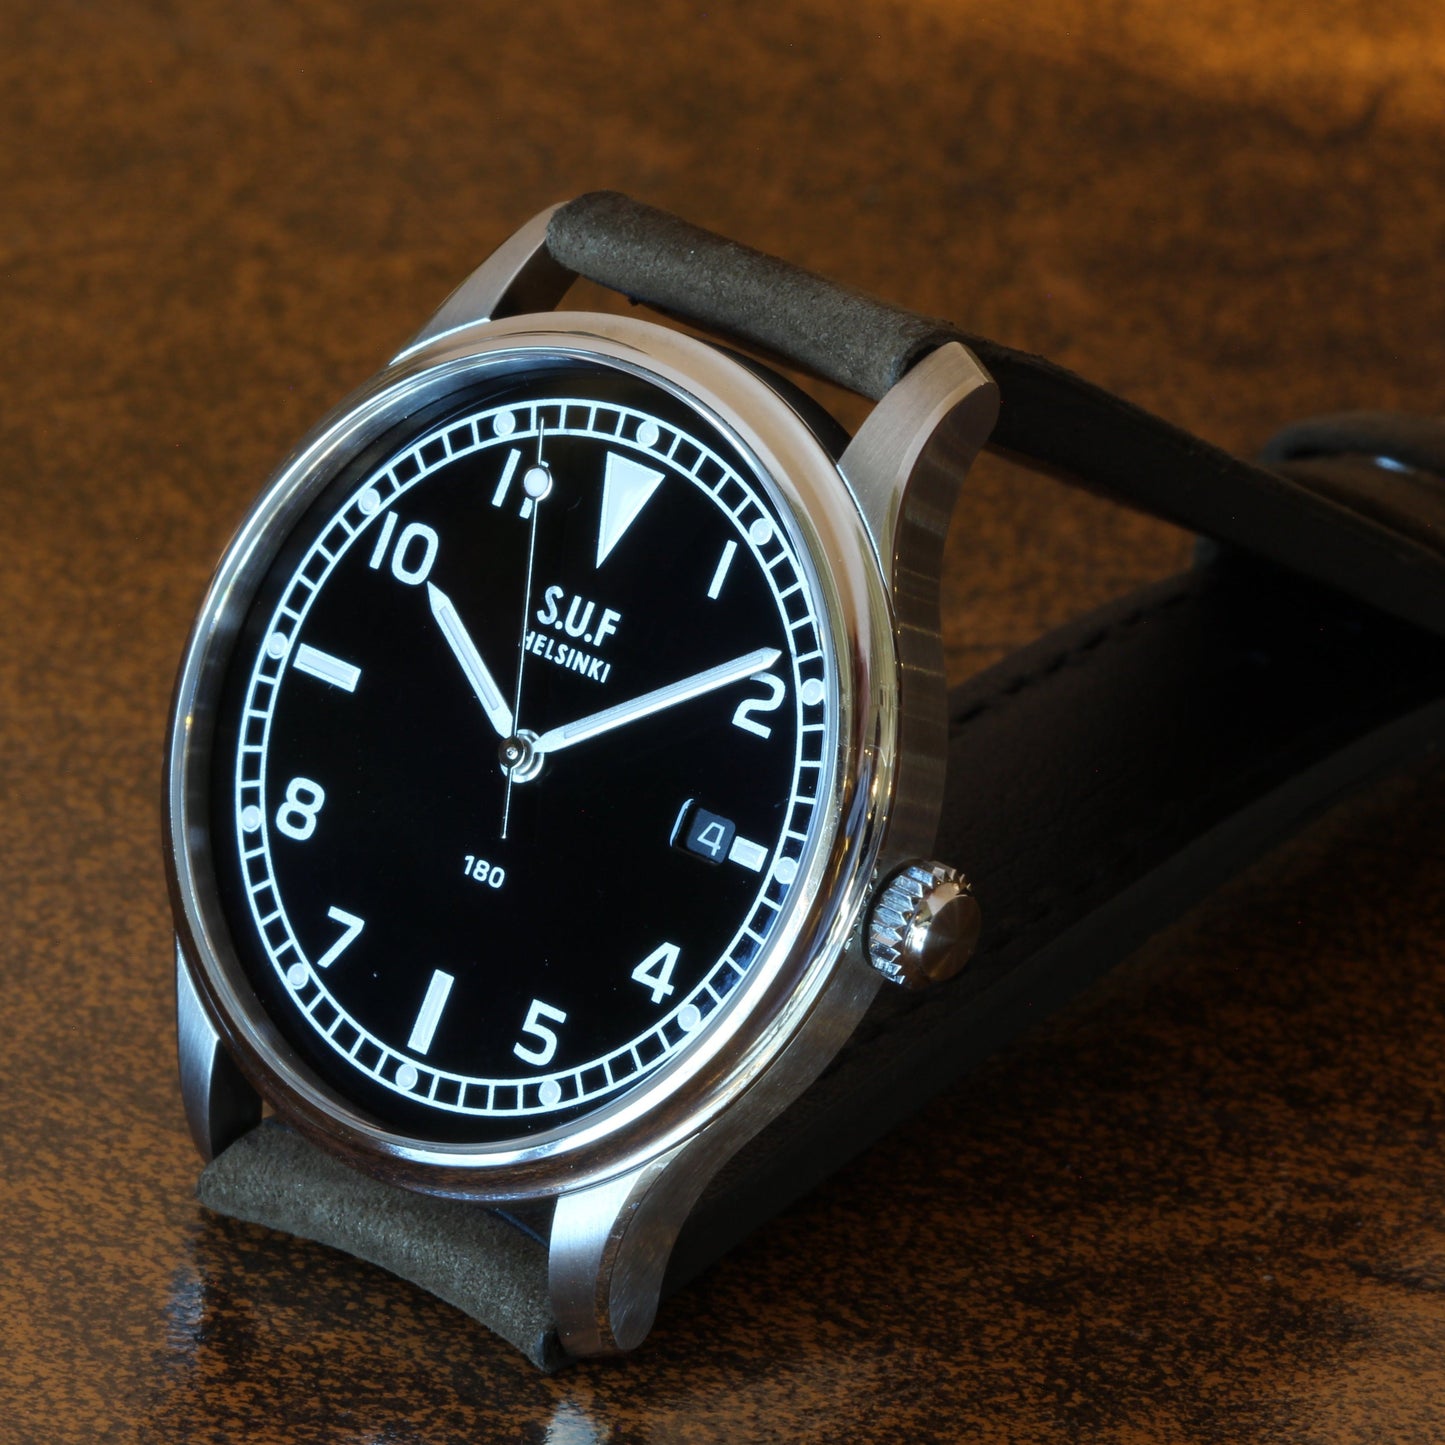 SUF Helsinki "180" S Black dial Ltd Edition Field watch on strap